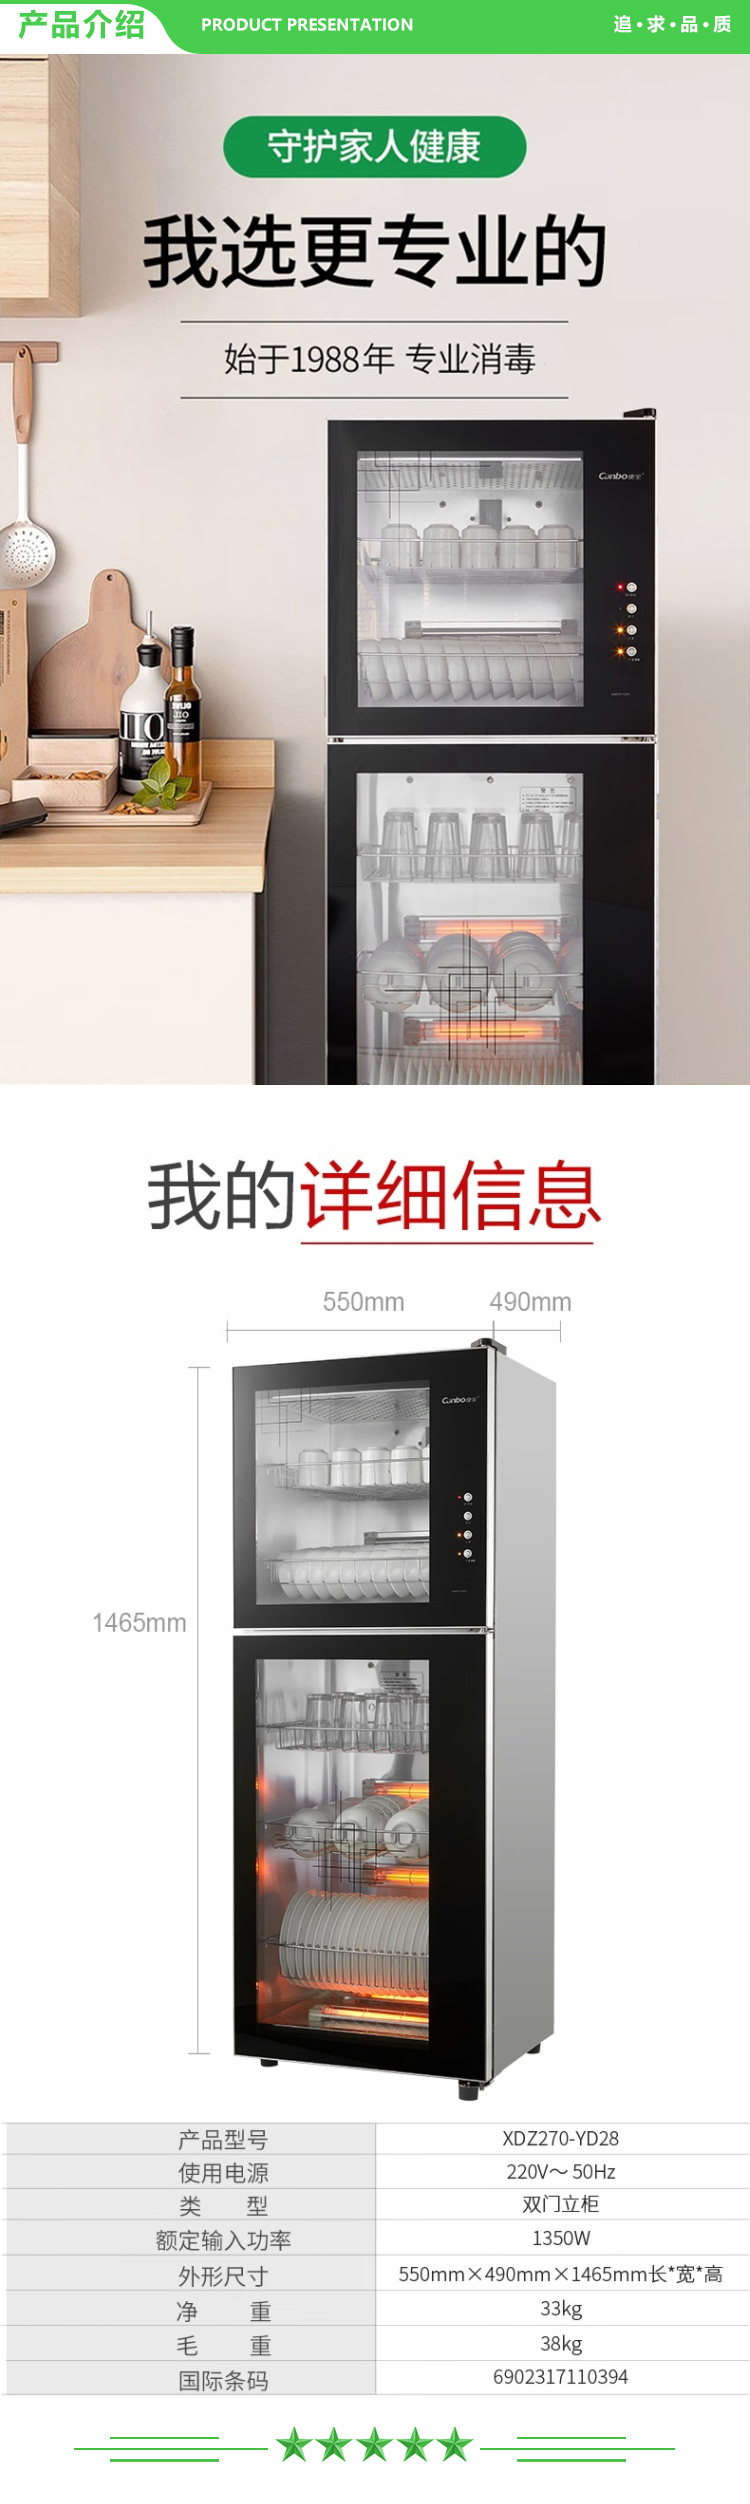 康宝 Canbo YD28 270L 消毒柜家用 厨房碗筷柜商用 270L 320L二星级高温消毒柜 .jpg